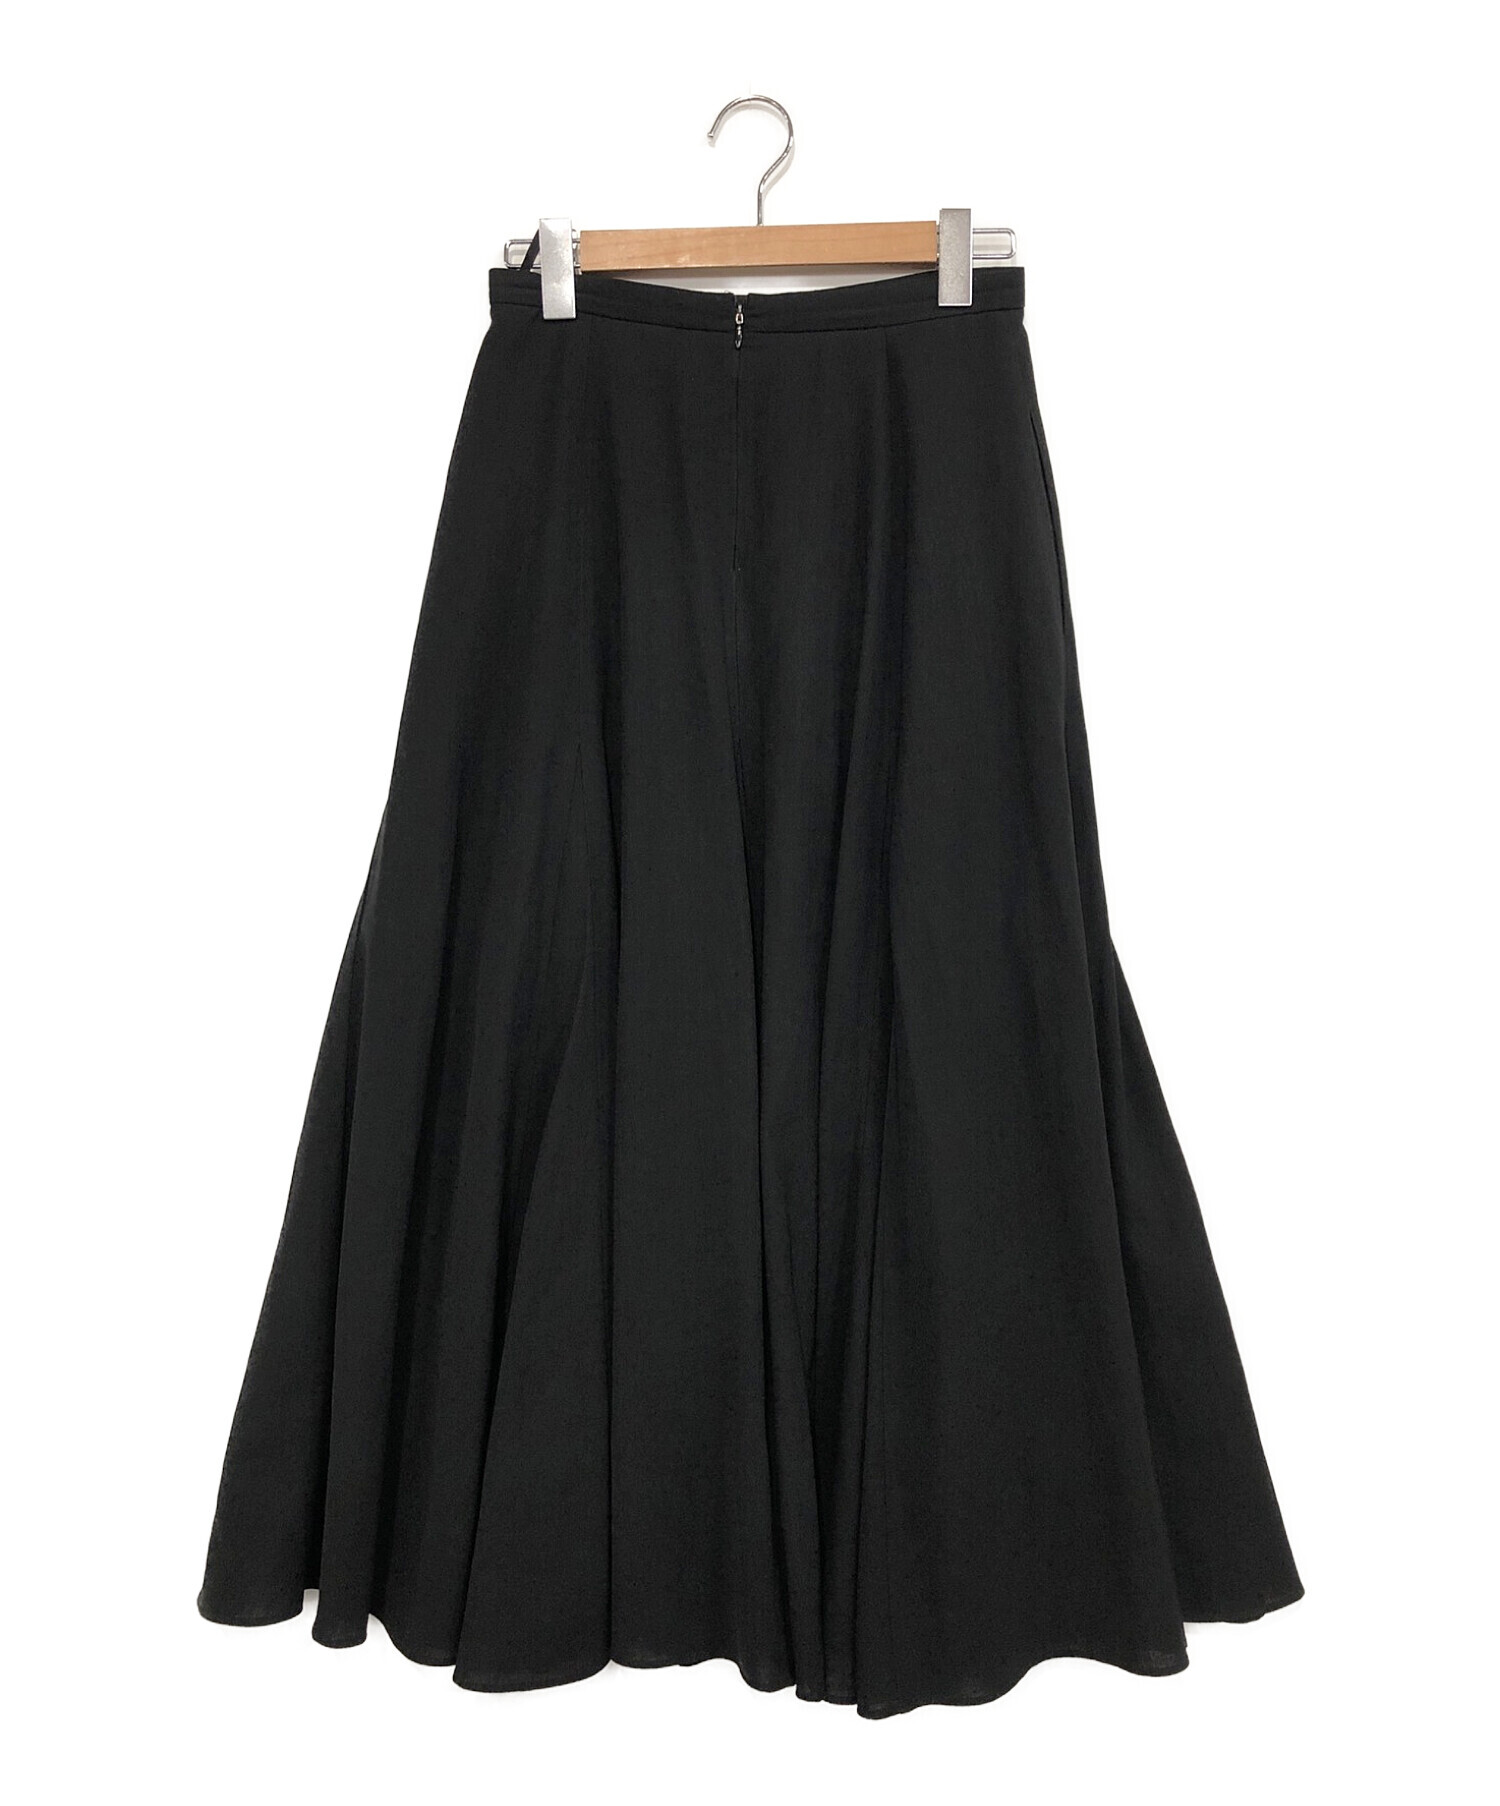 UNITED ARROWS (ユナイテッドアローズ) セミフレア ロングスカート ブラック サイズ:38